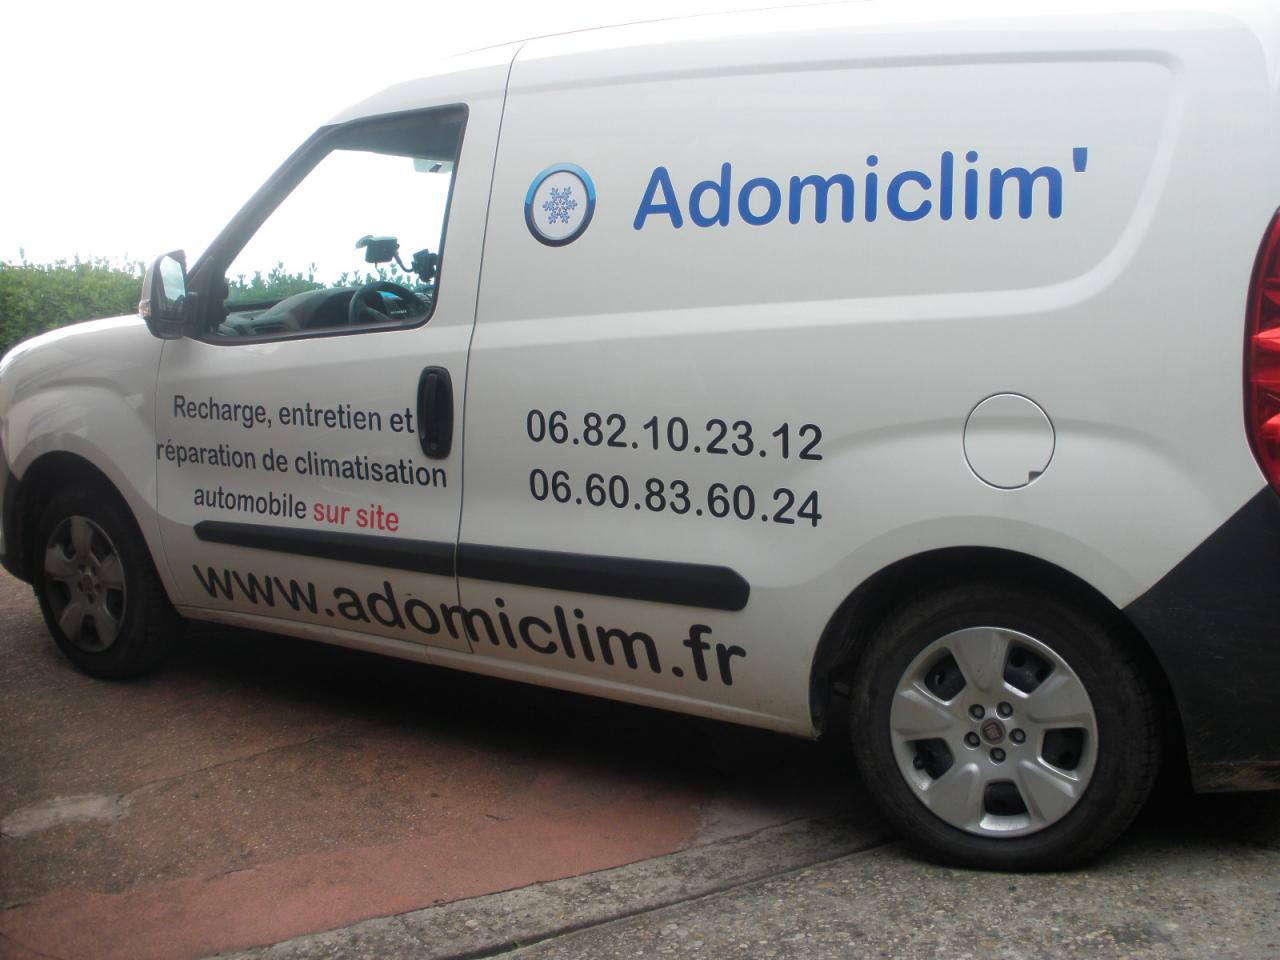 Adomiclim' spécialiste entretien et réparation de climatisation automobile